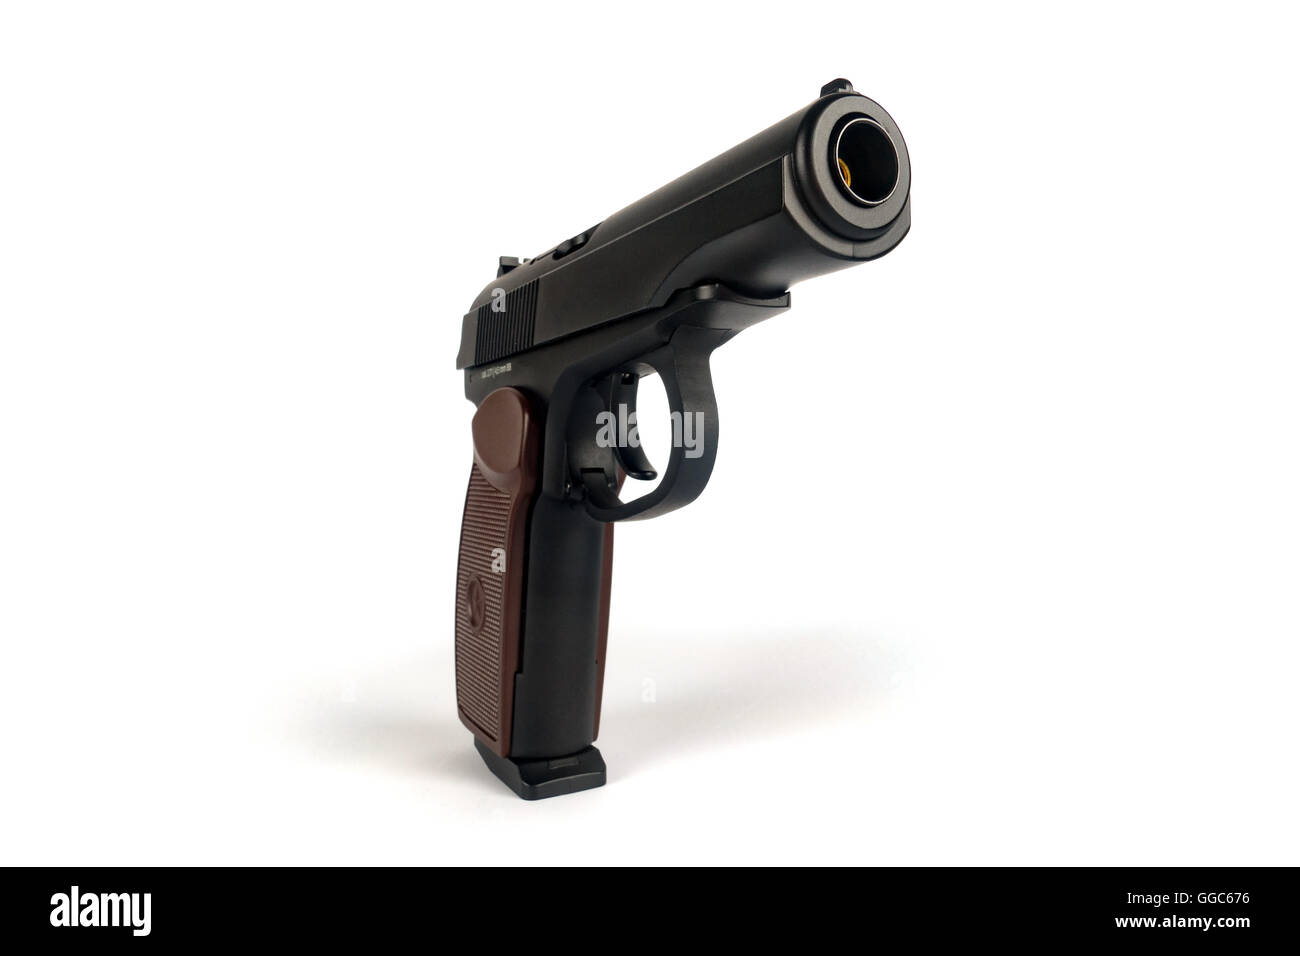 La pistola Makarov o PM es una federación de pistola semi-automática, se convirtió en el estándar de la Unión Soviética, militares y de policía de brazo lateral Foto de stock